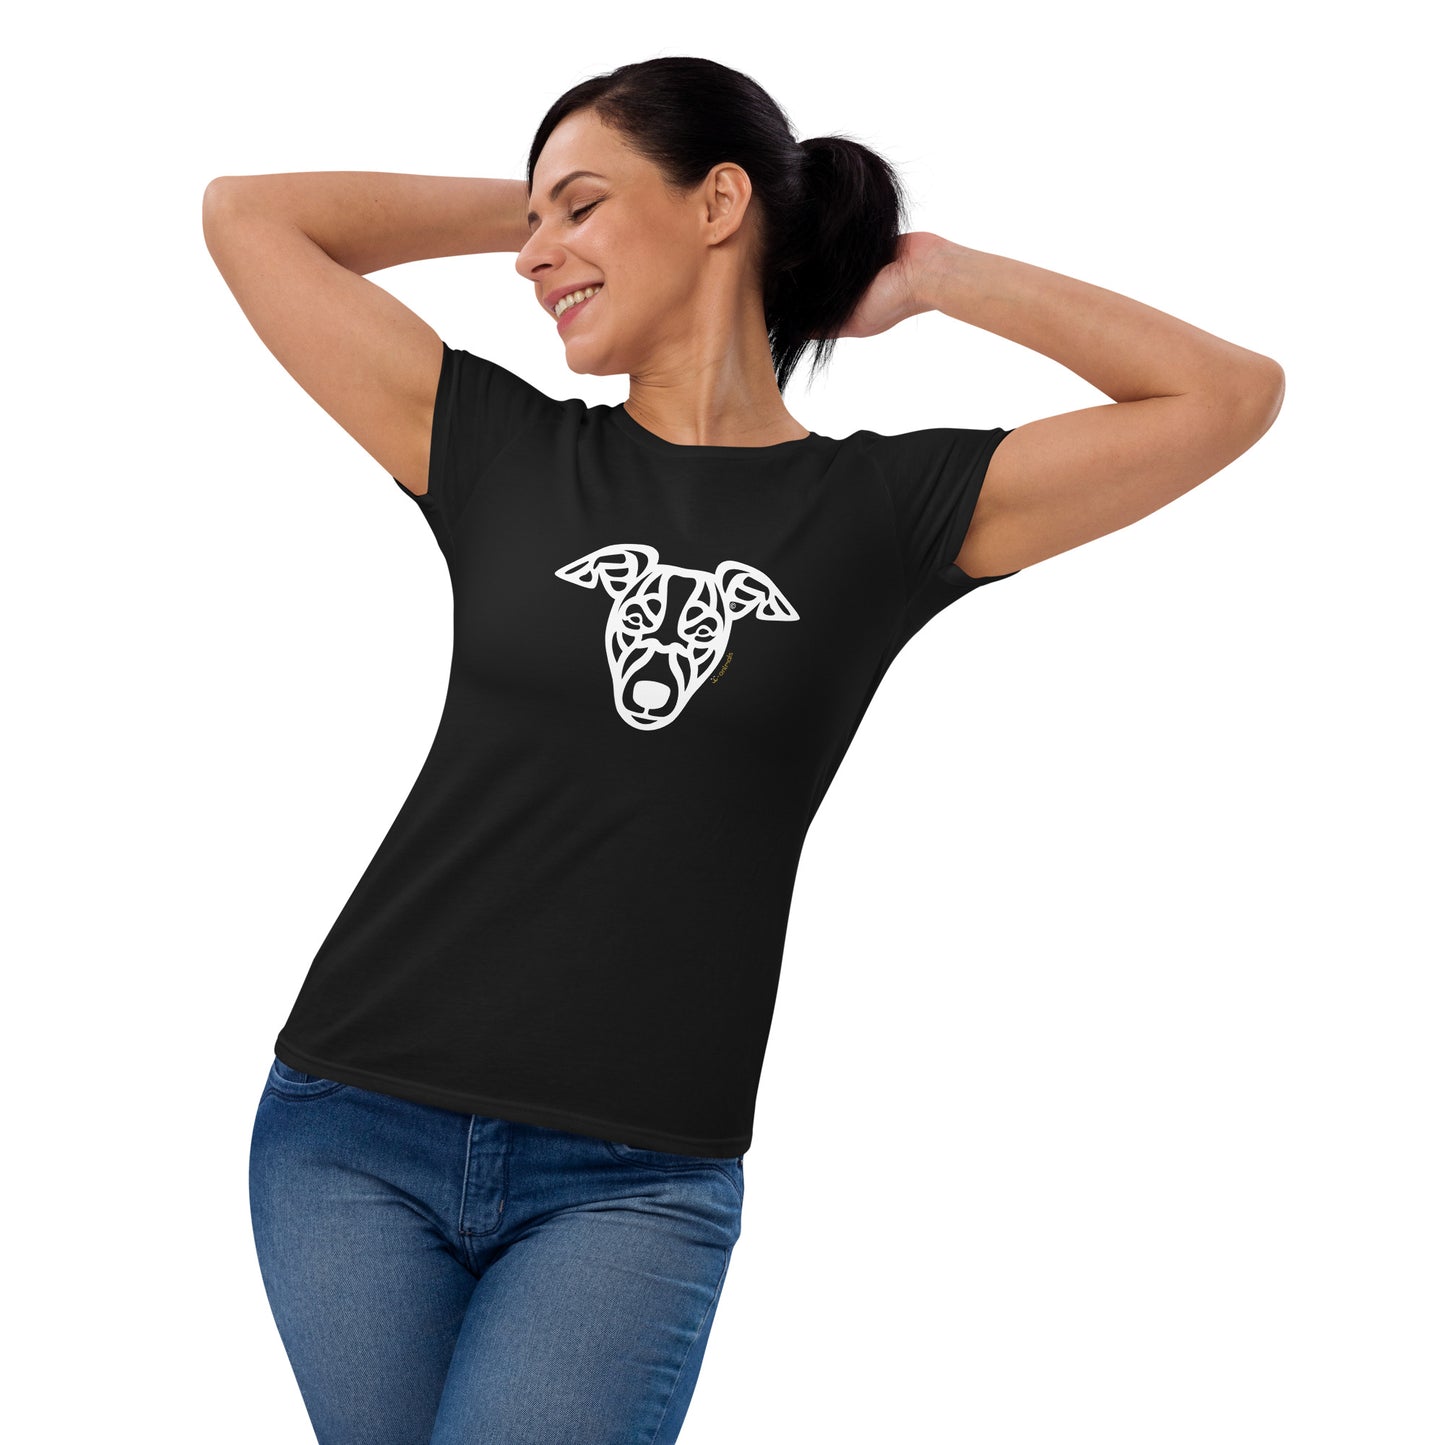 Camiseta mujer manga corta - Whippet - Tribal